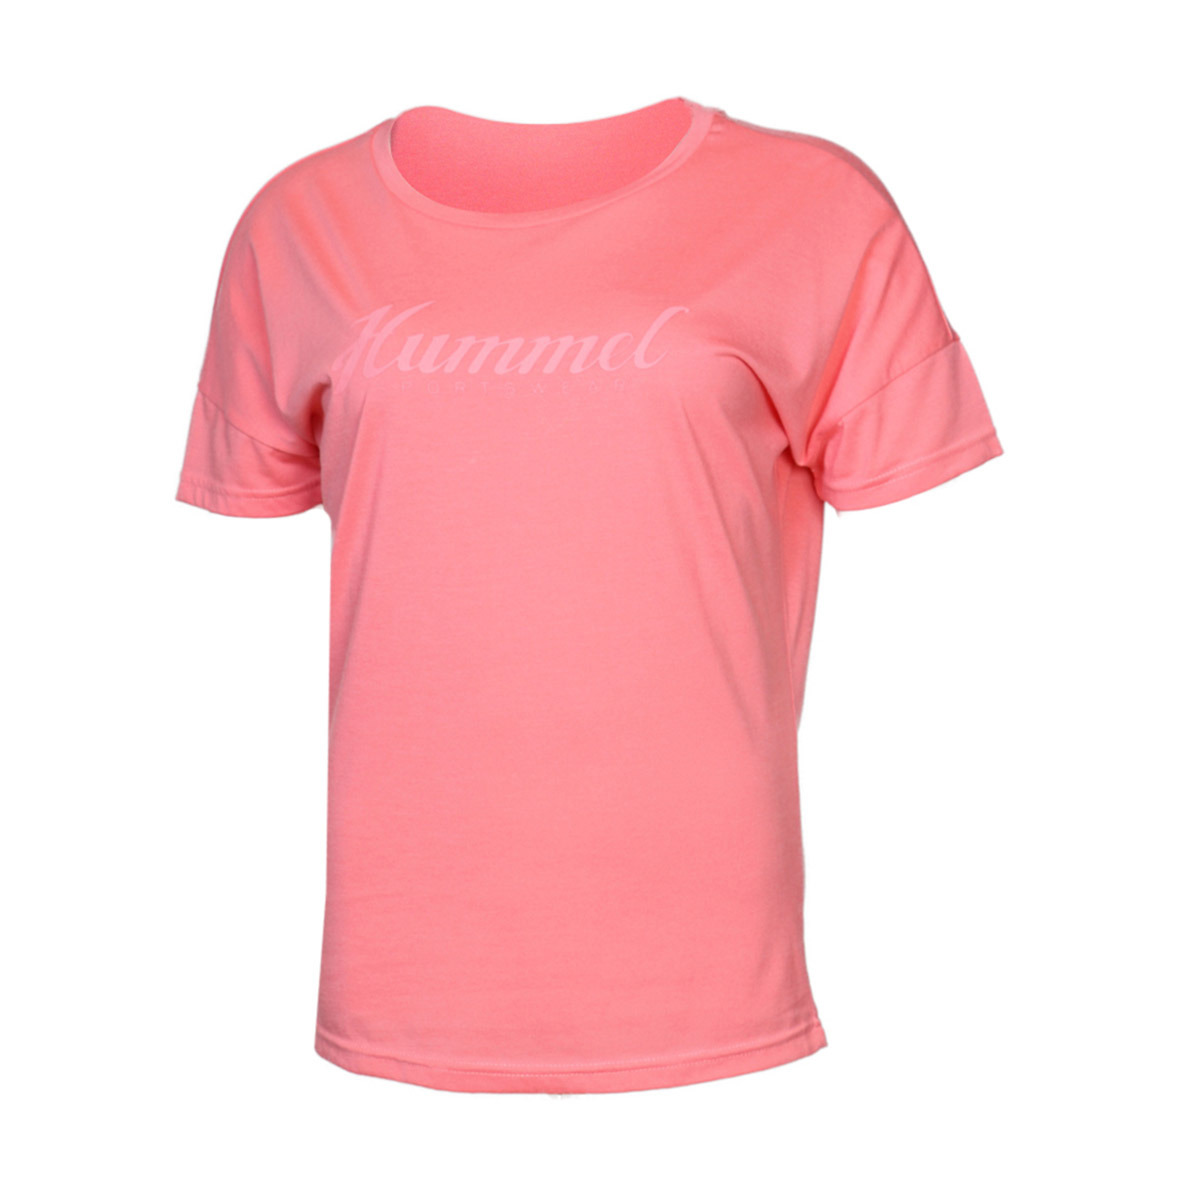 Flo HMLFERIN  T-SHIRT S/S Çok Renkli Kadın Kısa Kol Tişört. 2